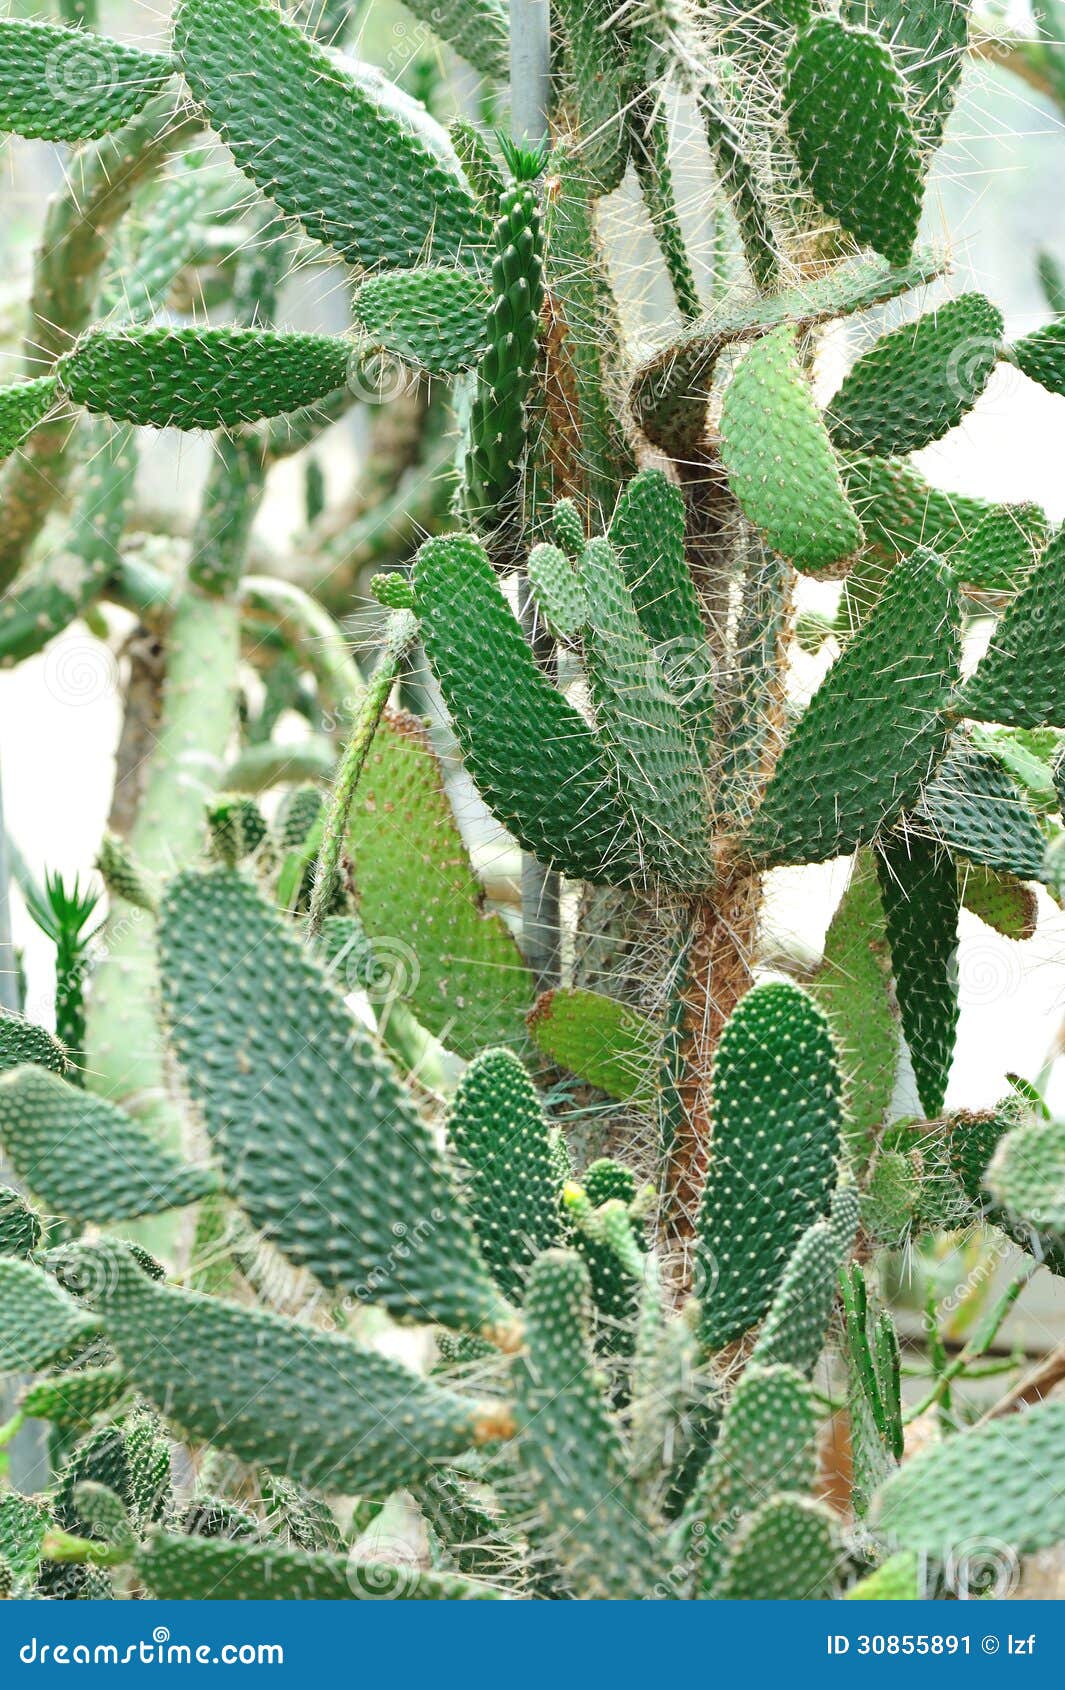 Thorny Cactus Tree Stock Image Image 30855891